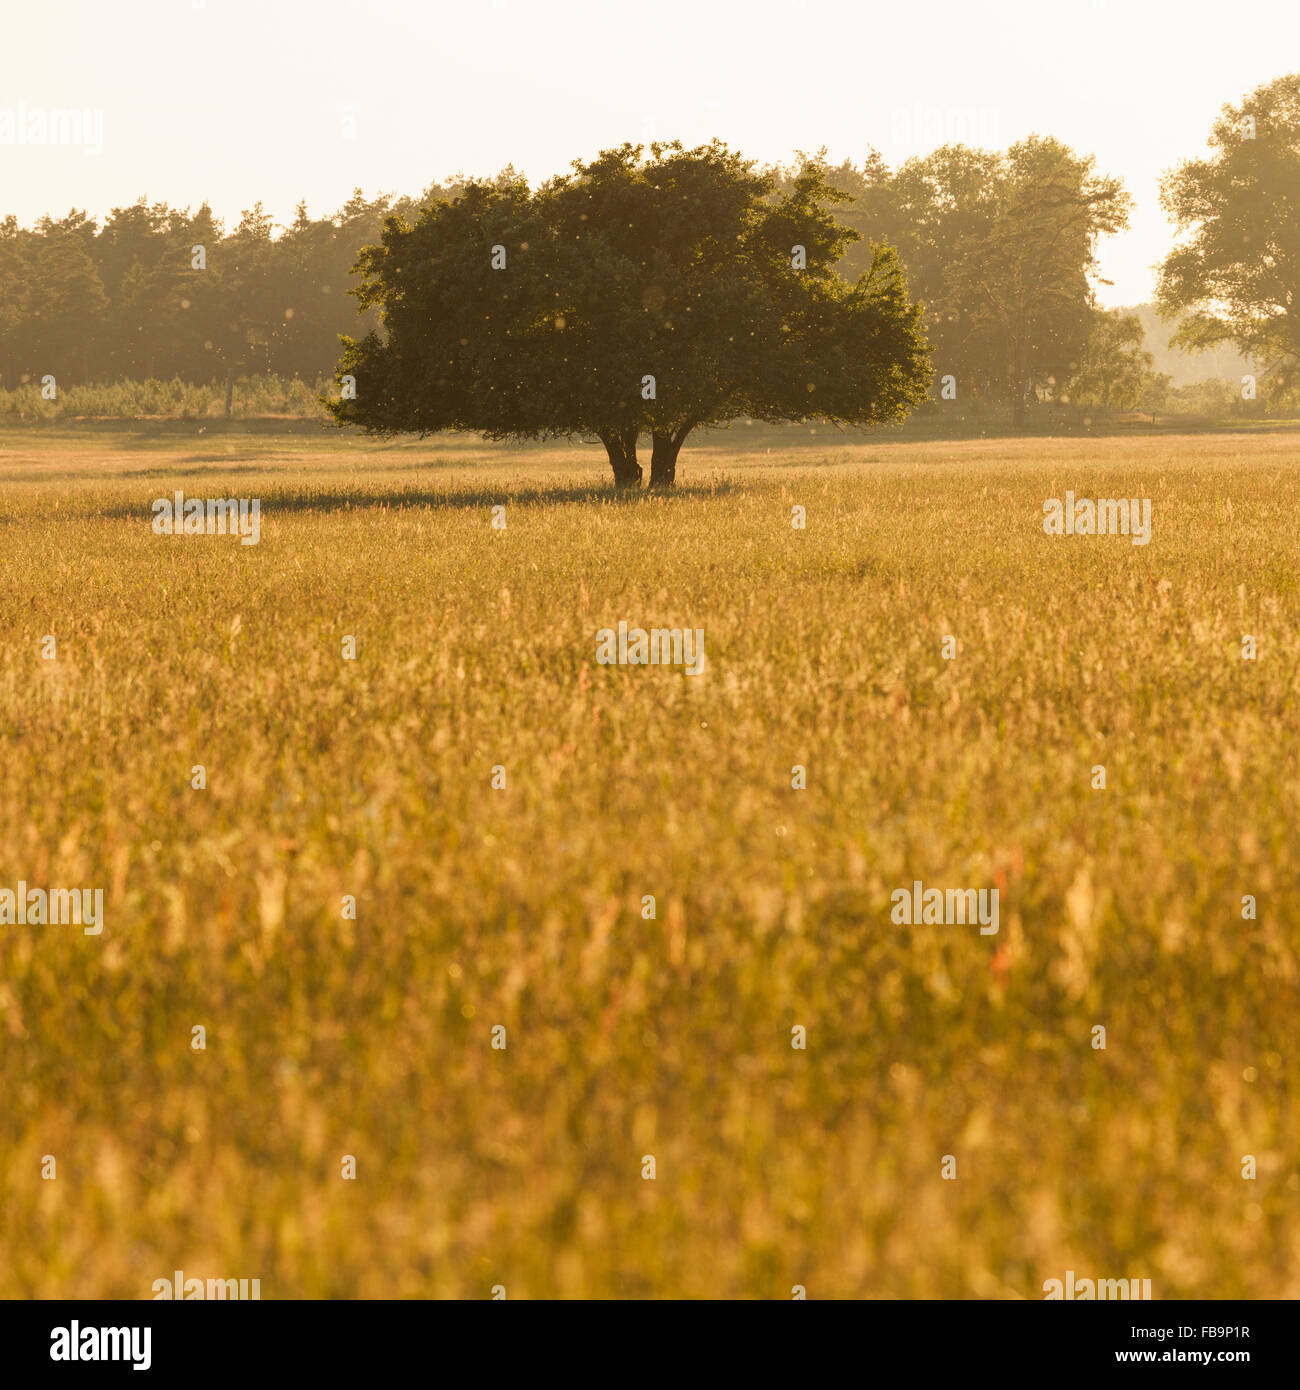 Sweden, Skane, Tree in meadow Stock Photo